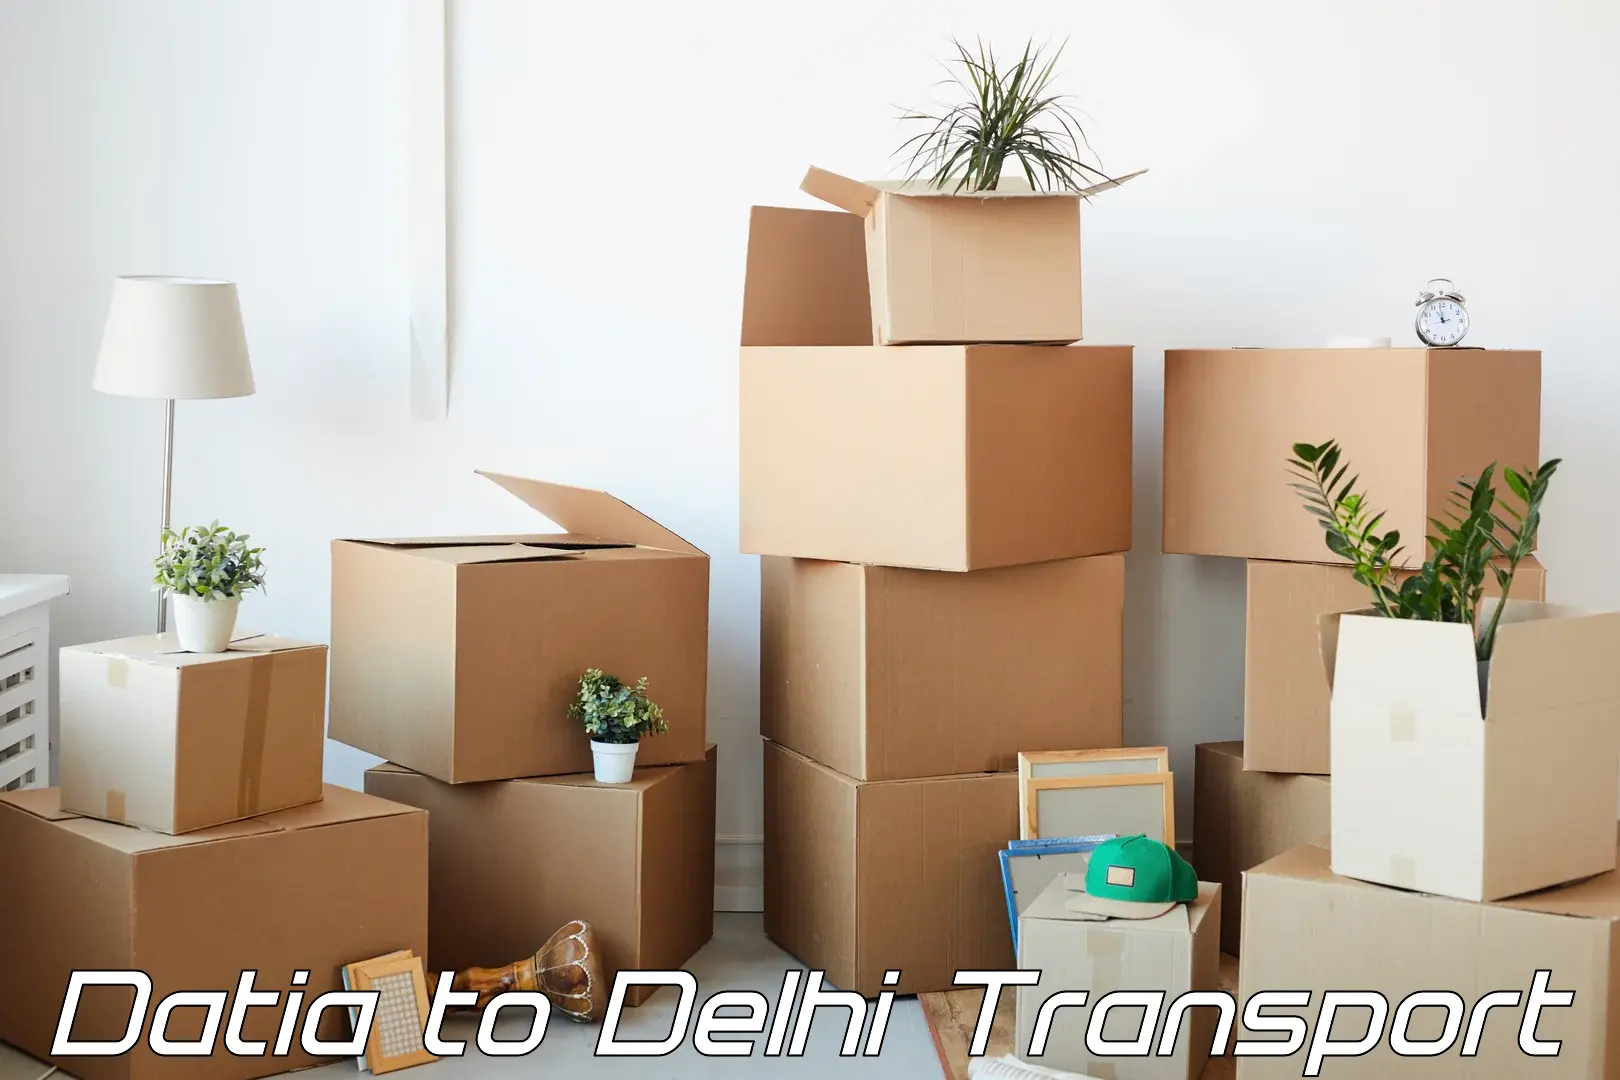 All India transport service Datia to IIT Delhi